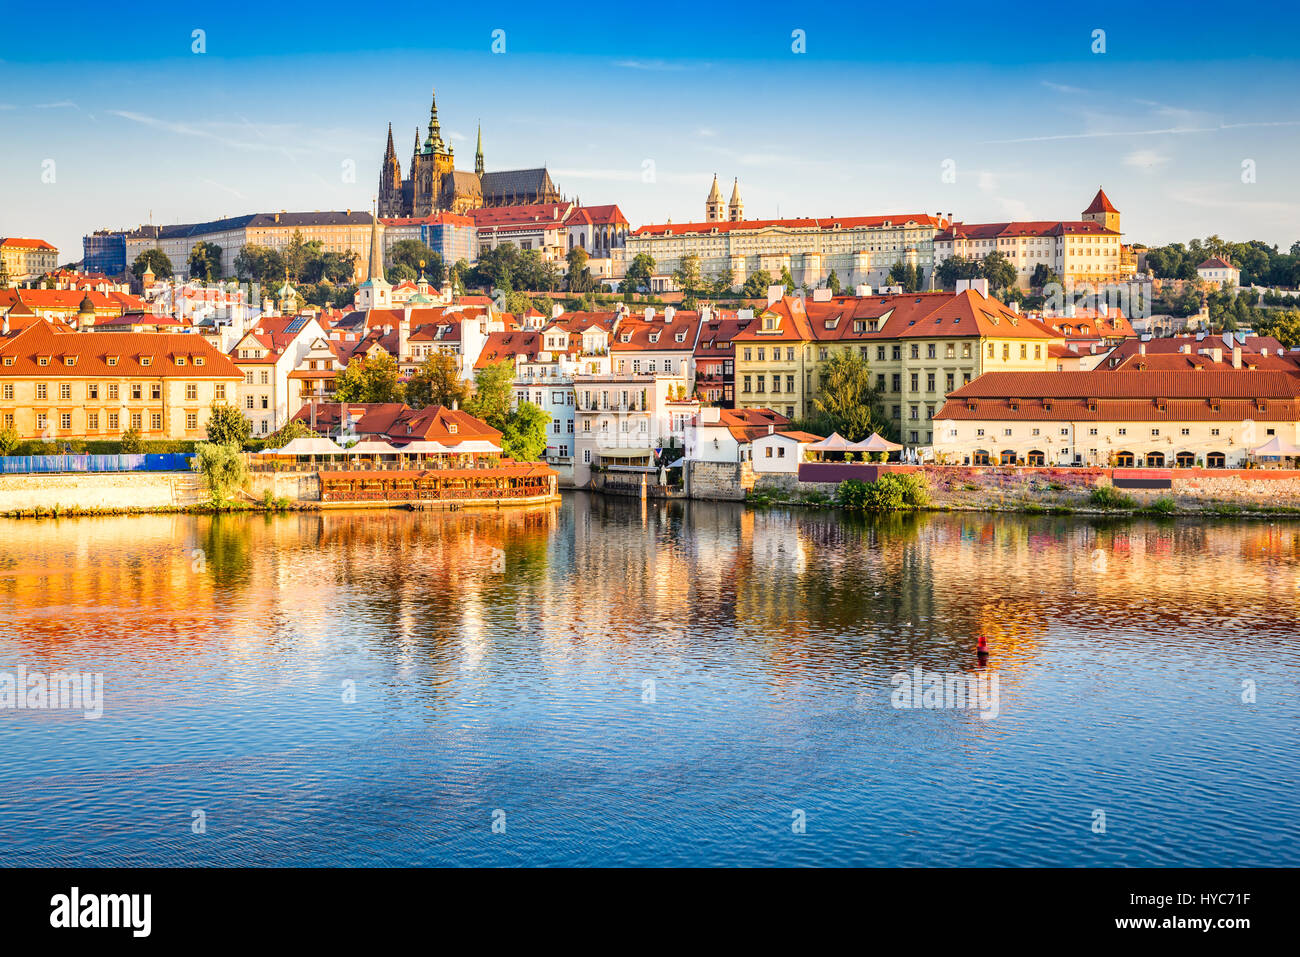 Praga, Boemia, Repubblica ceca. hradcany è il castello di Praga con le chiese, cappelle, sale e torri da ogni periodo della sua storia. Foto Stock